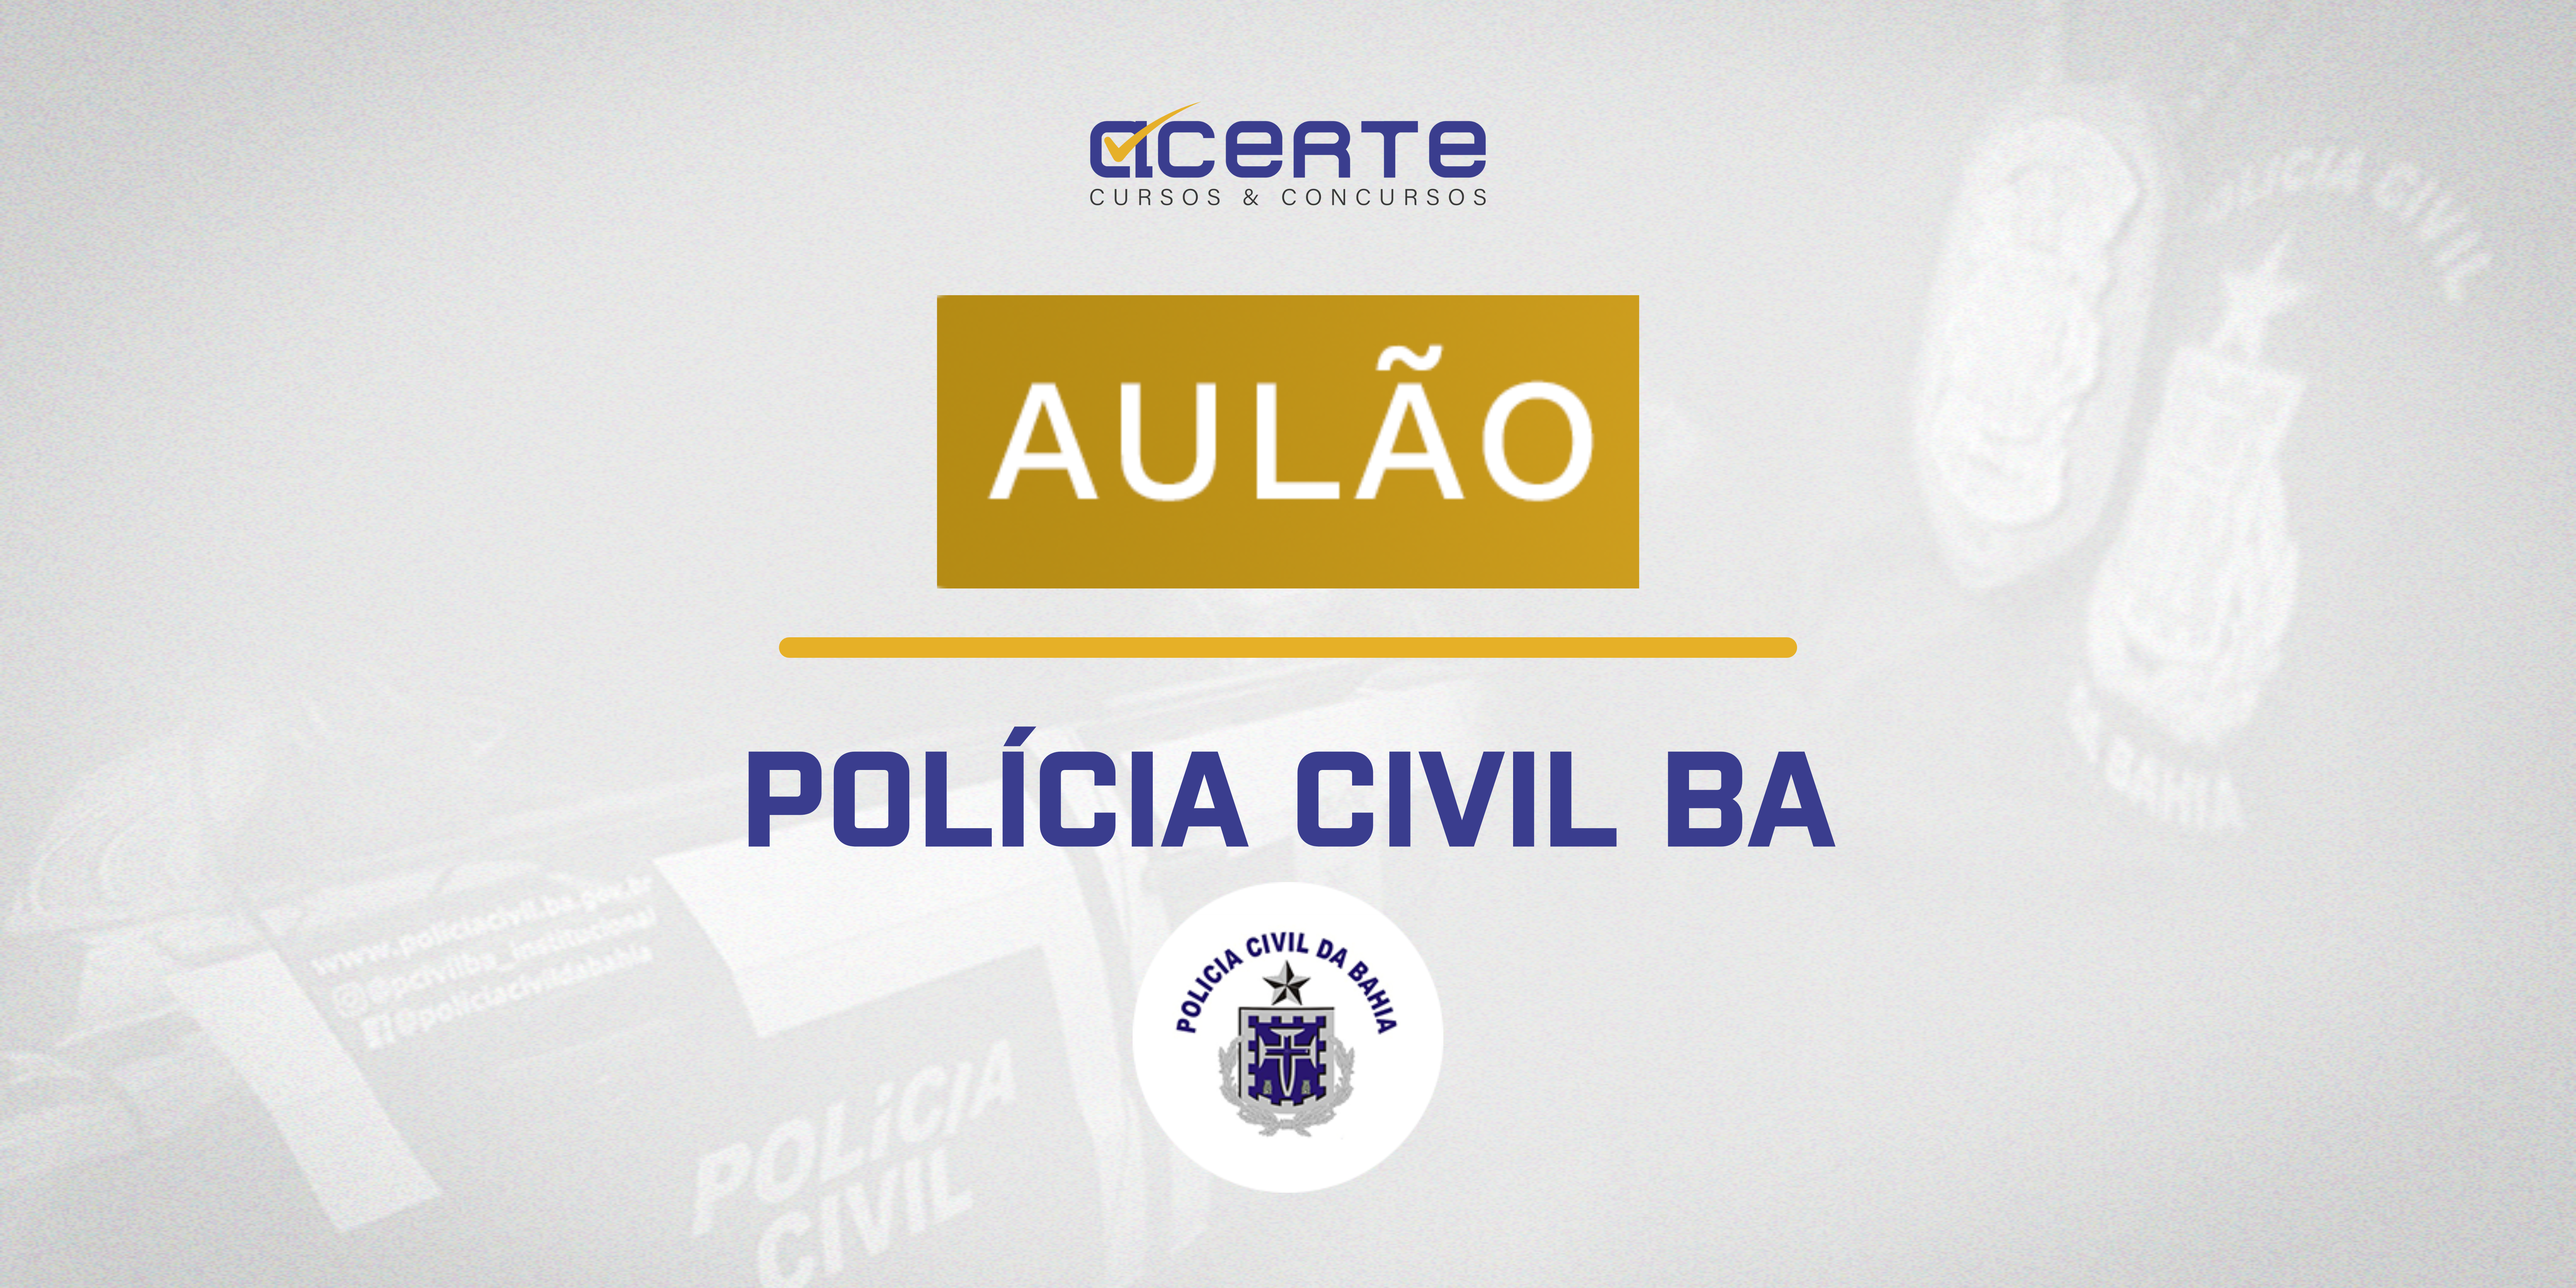 Polícia Civil da Bahia - Aulão - Presencial